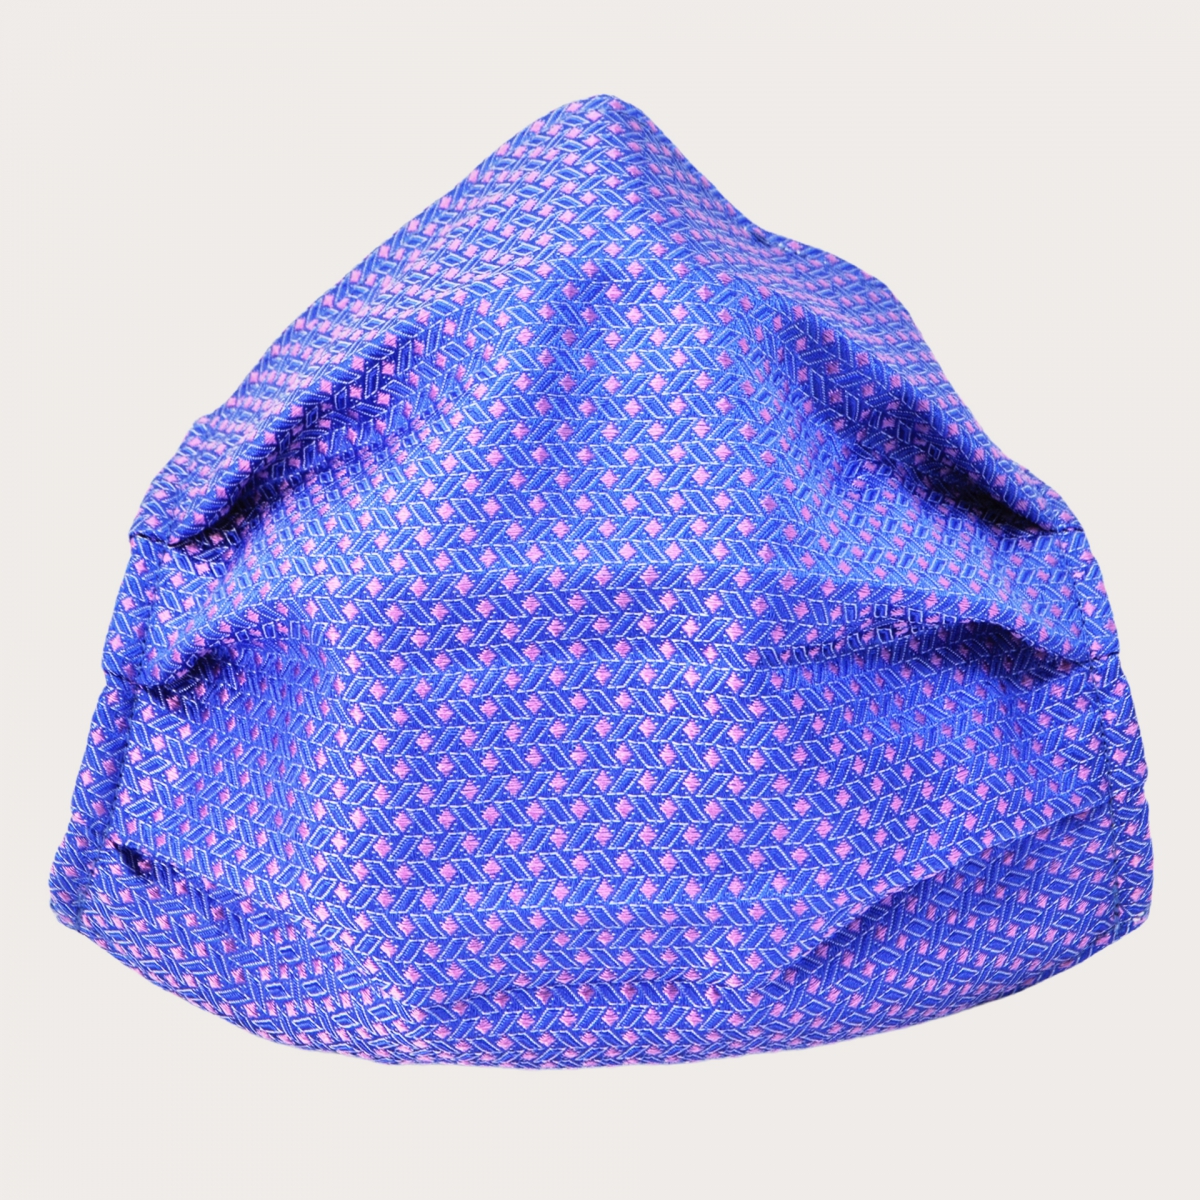 Mascarilla lavable StyleMask en seda, patrón geométrico rosa y azul claro